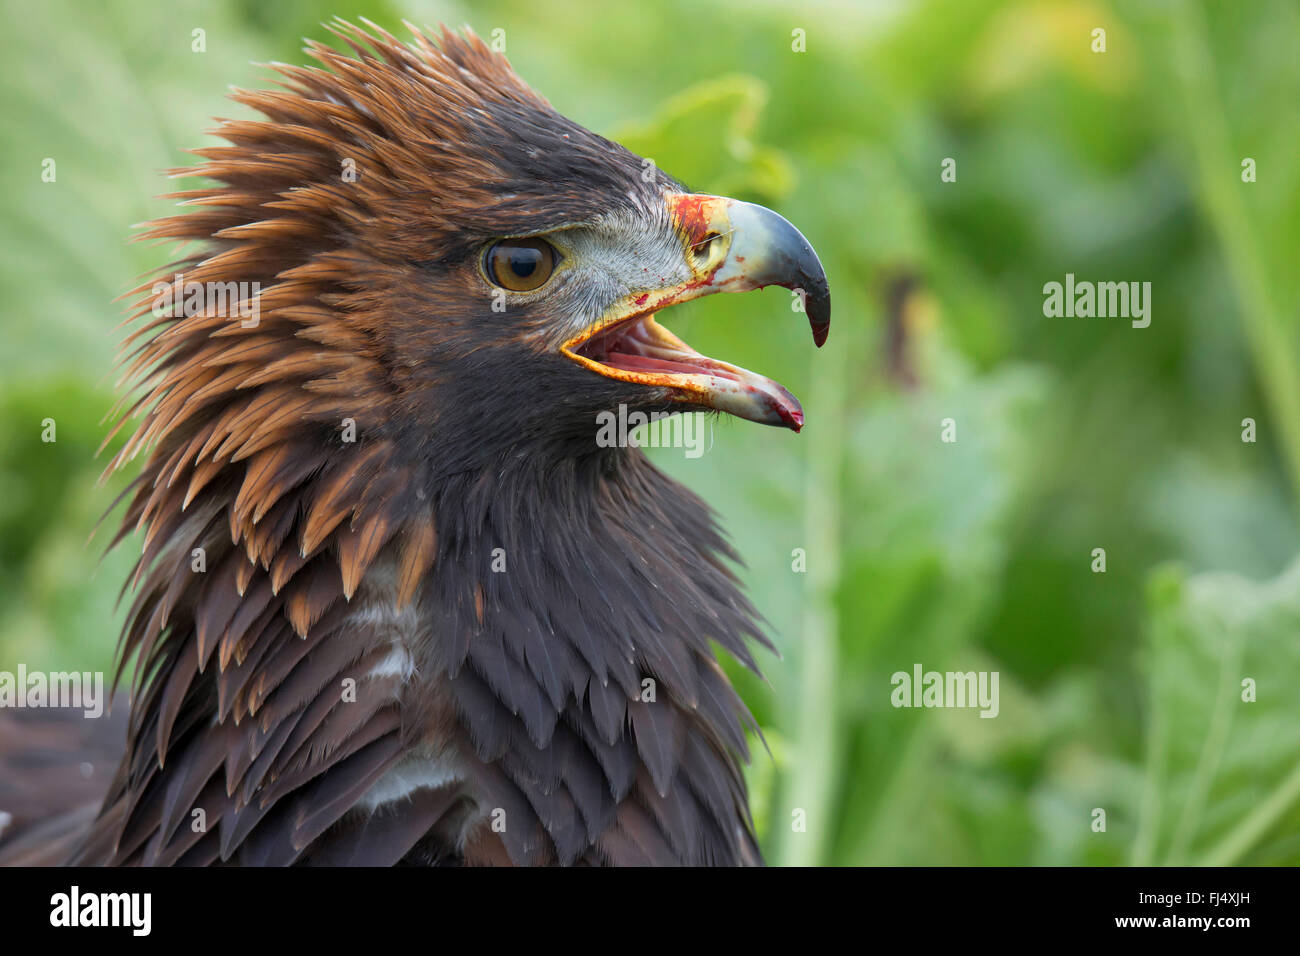 Águila real (Aquila chrysaetos), postura amenazadora, tras la exitosa cacería Foto de stock